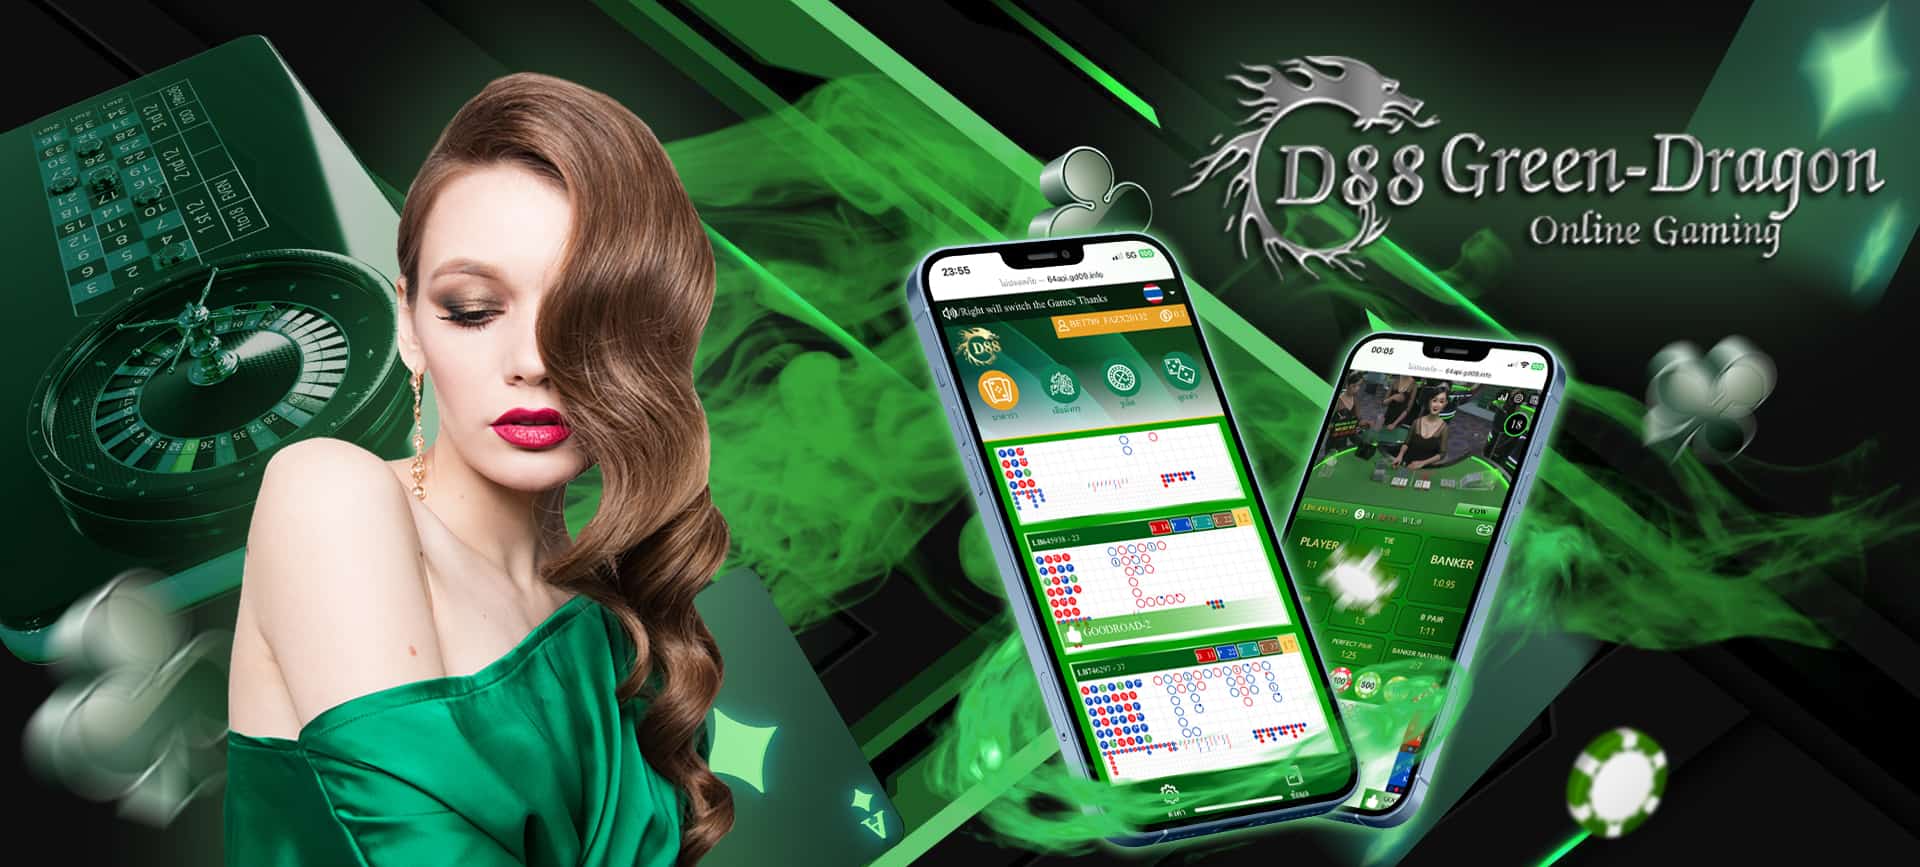 D88 Green Dragon เว็บไซต์คาสิโนเปิดใหม่ มาแรง พร้อมให้บริการแล้ววันนี้